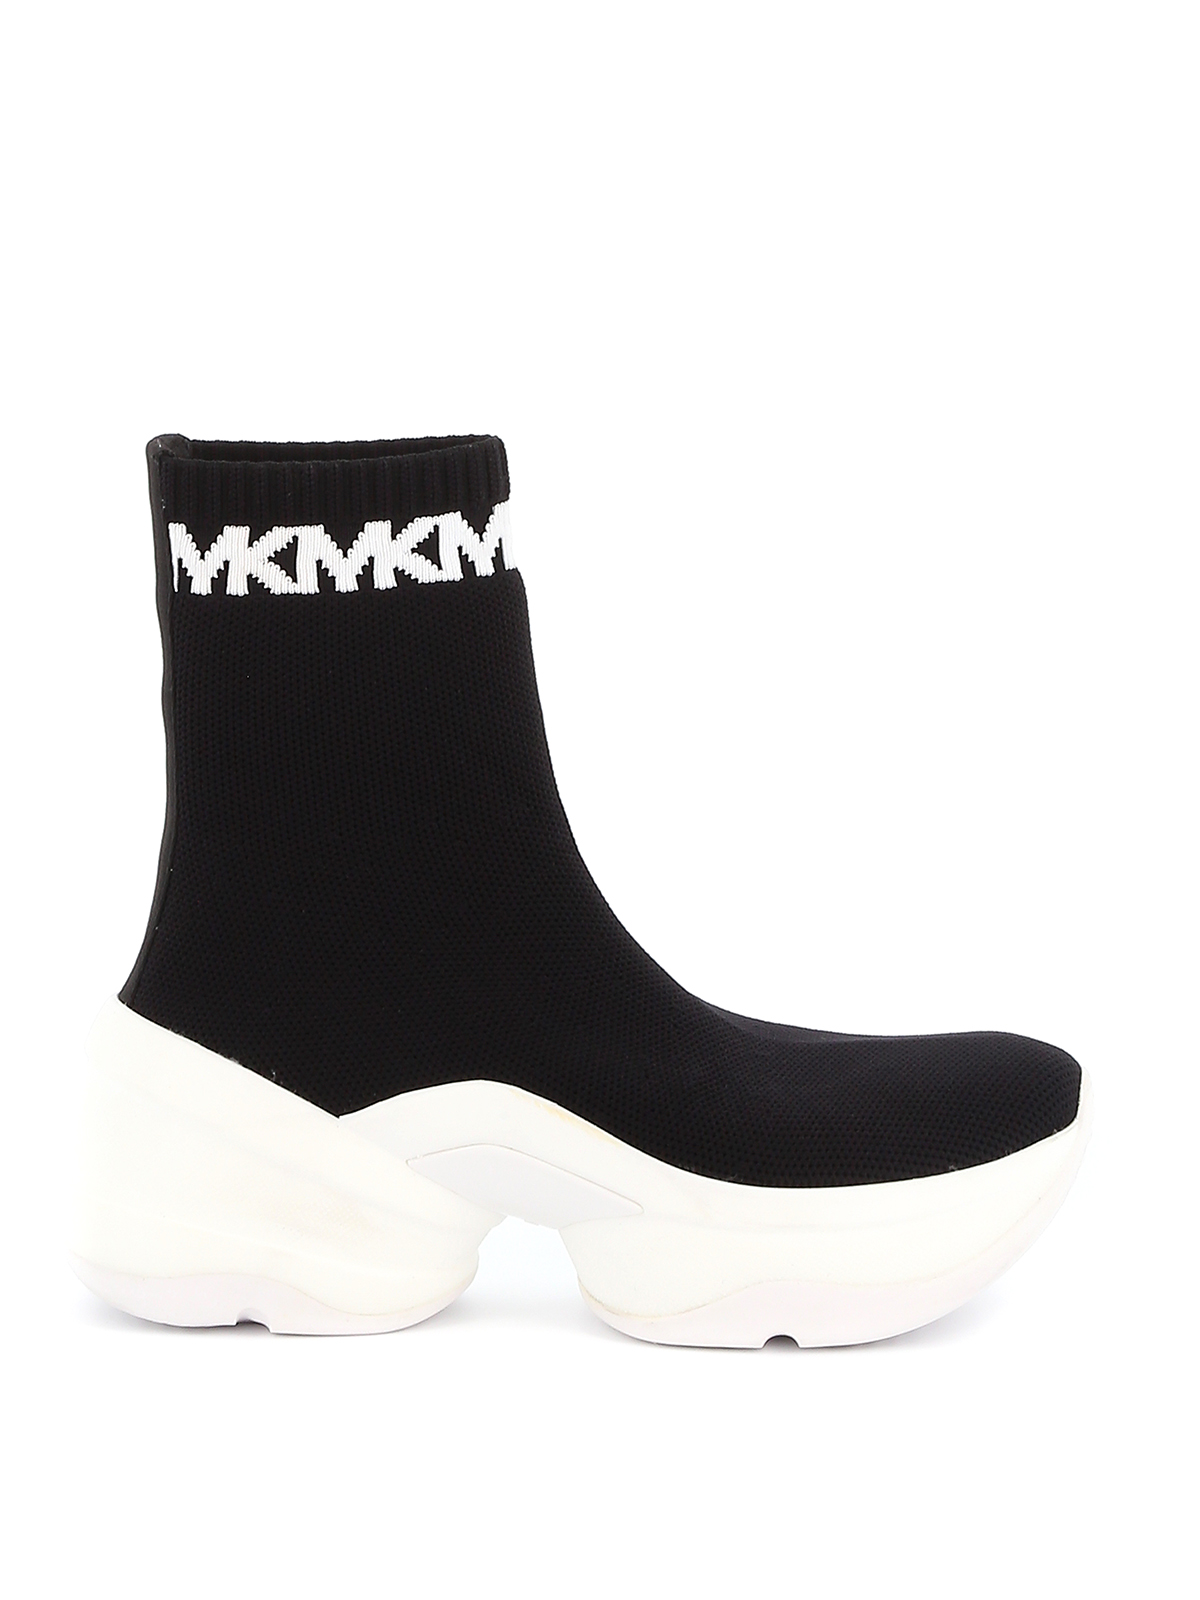 mk sock shoes